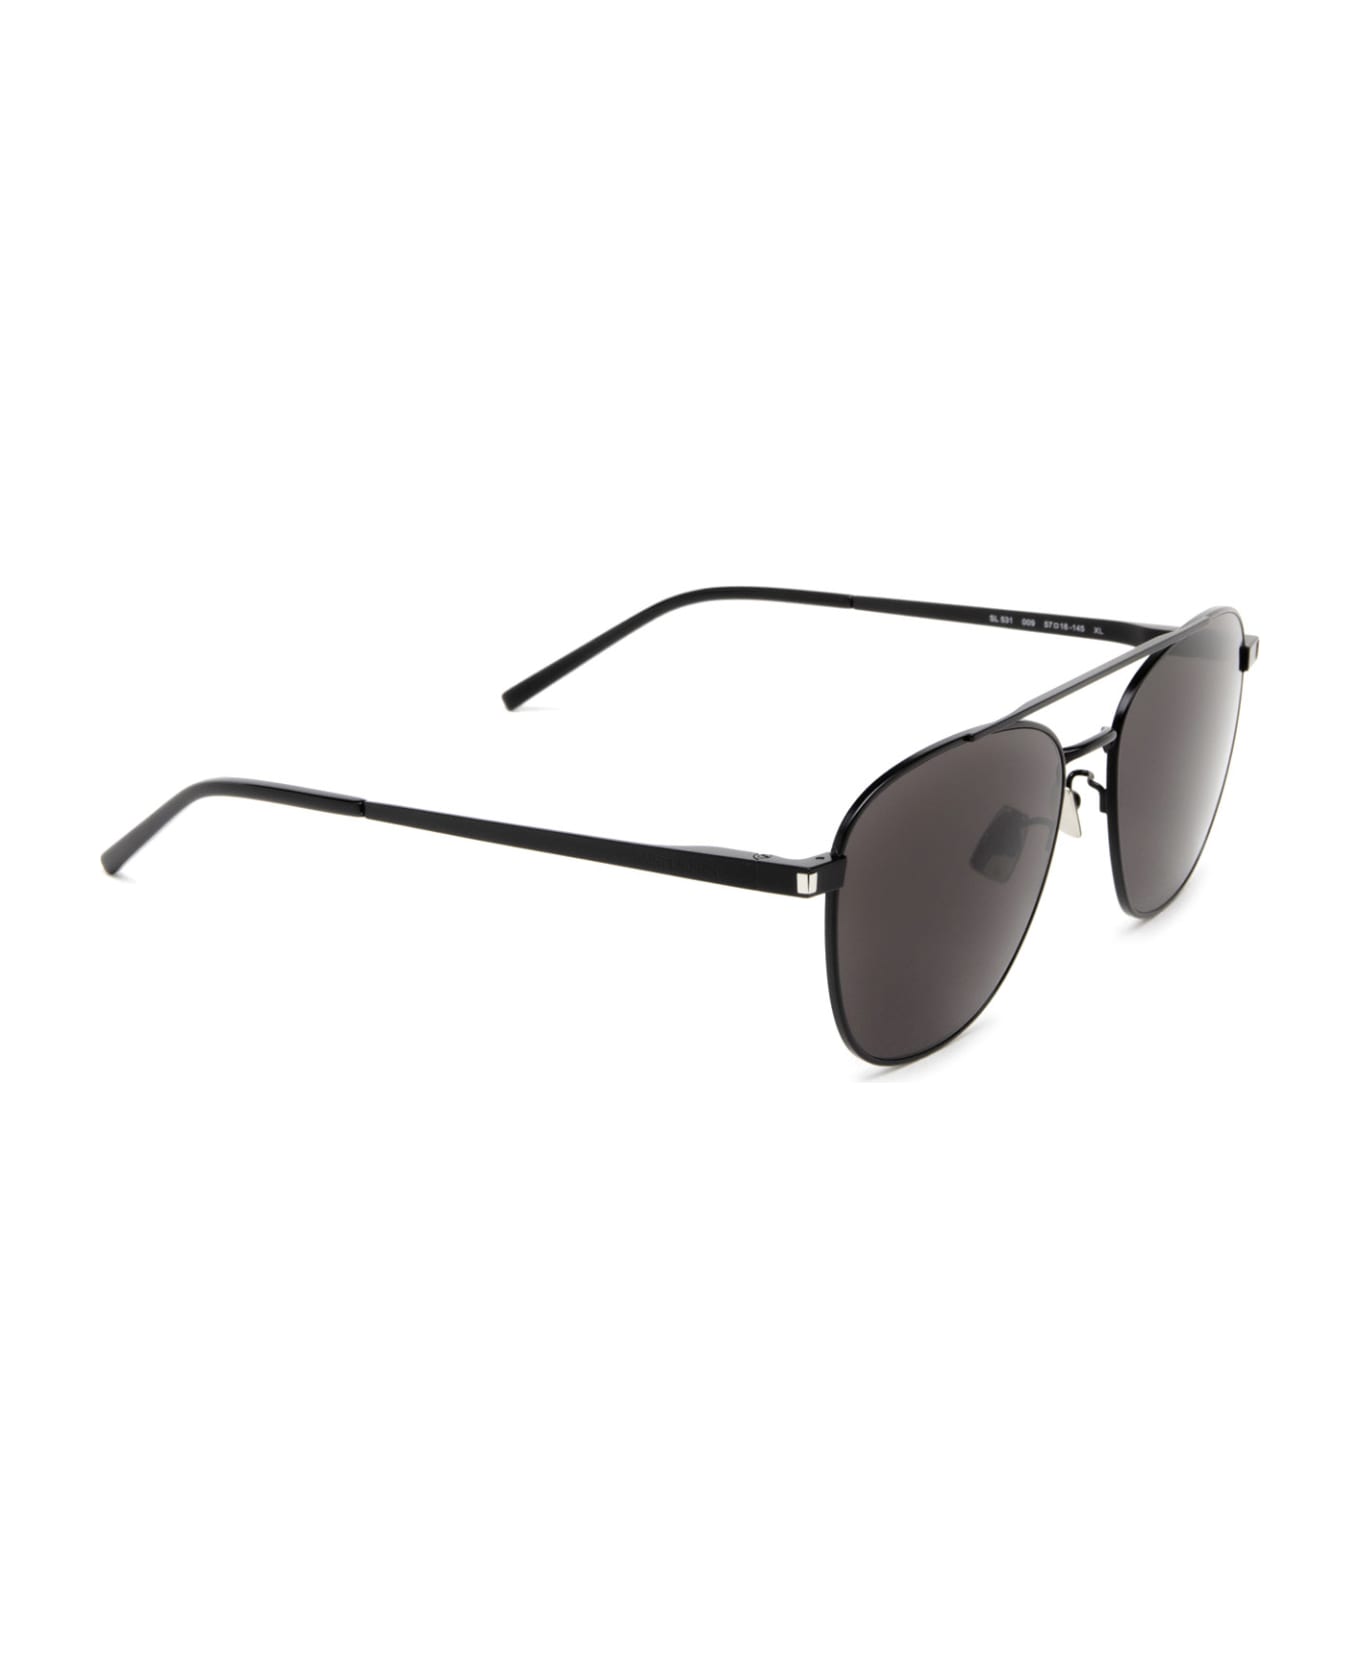 Saint Laurent Eyewear Sl 531 Black Sunglasses - Black